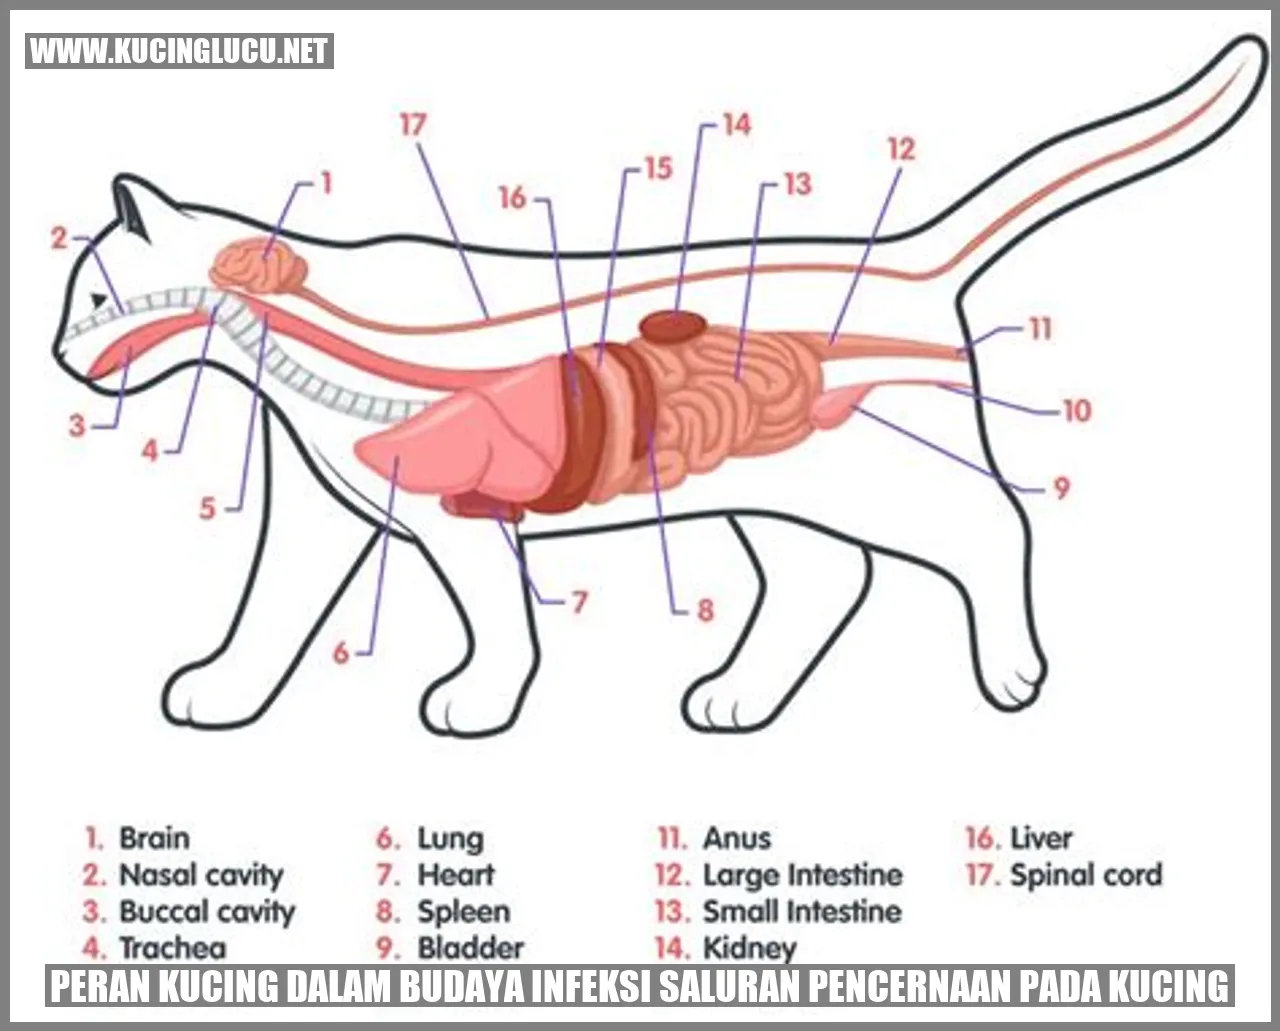 Peran Kucing dalam Budaya infeksi saluran pencernaan pada kucing